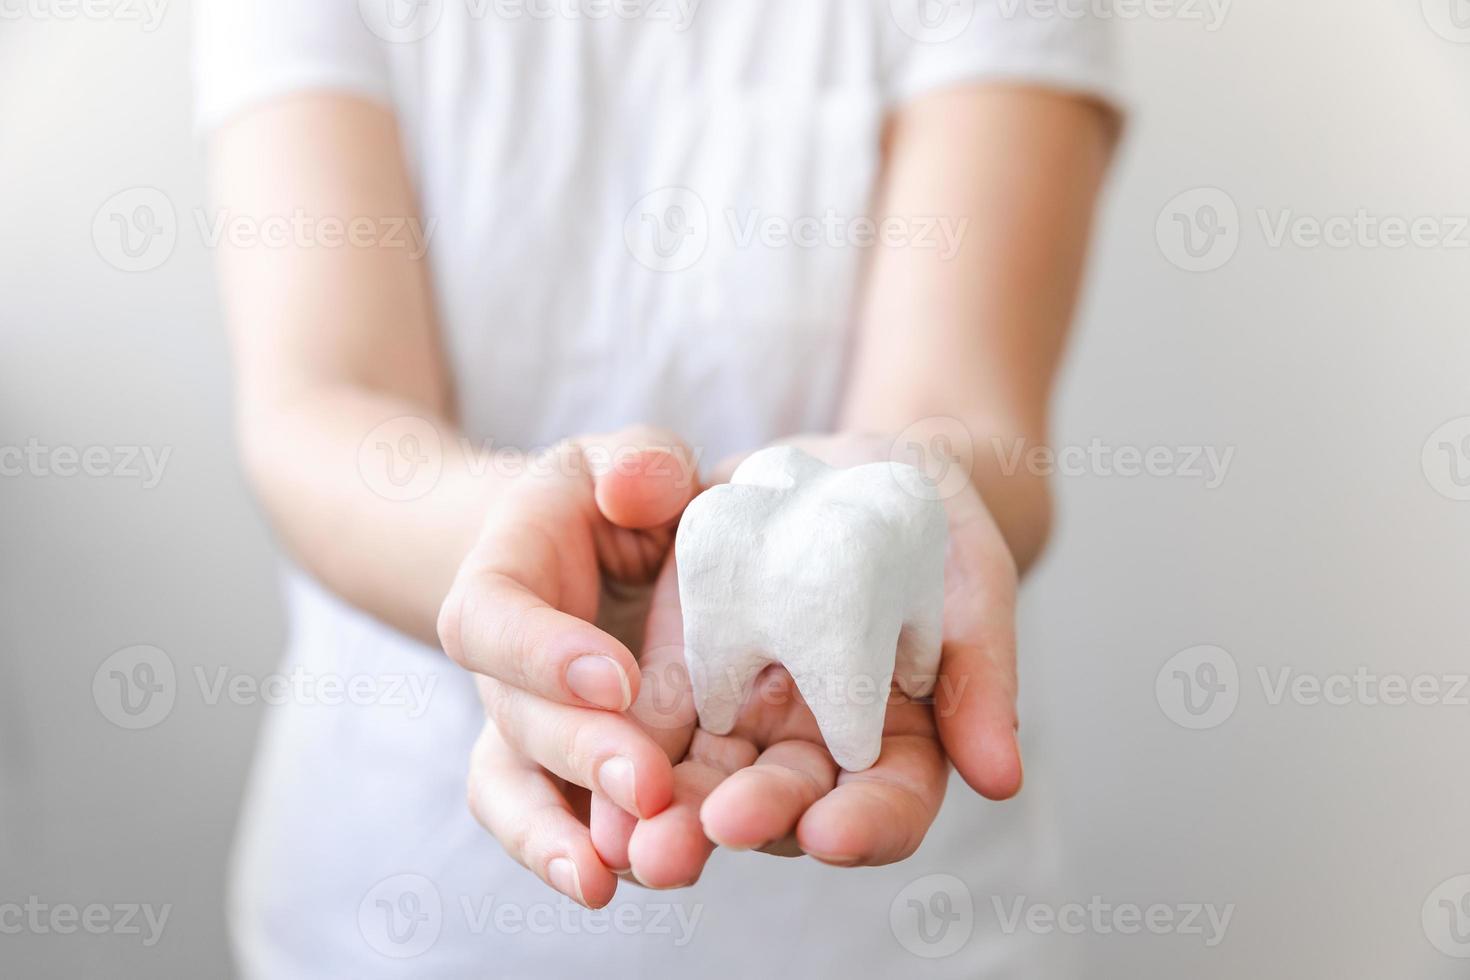 Gesundheitszahnpflegekonzept. Frauenhand, die weißes gesundes Zahnmodell lokalisiert auf weißem Hintergrund hält. Zahnaufhellung, zahnärztliche Mundhygiene, Zahnsanierung, Zahnarzttag. foto